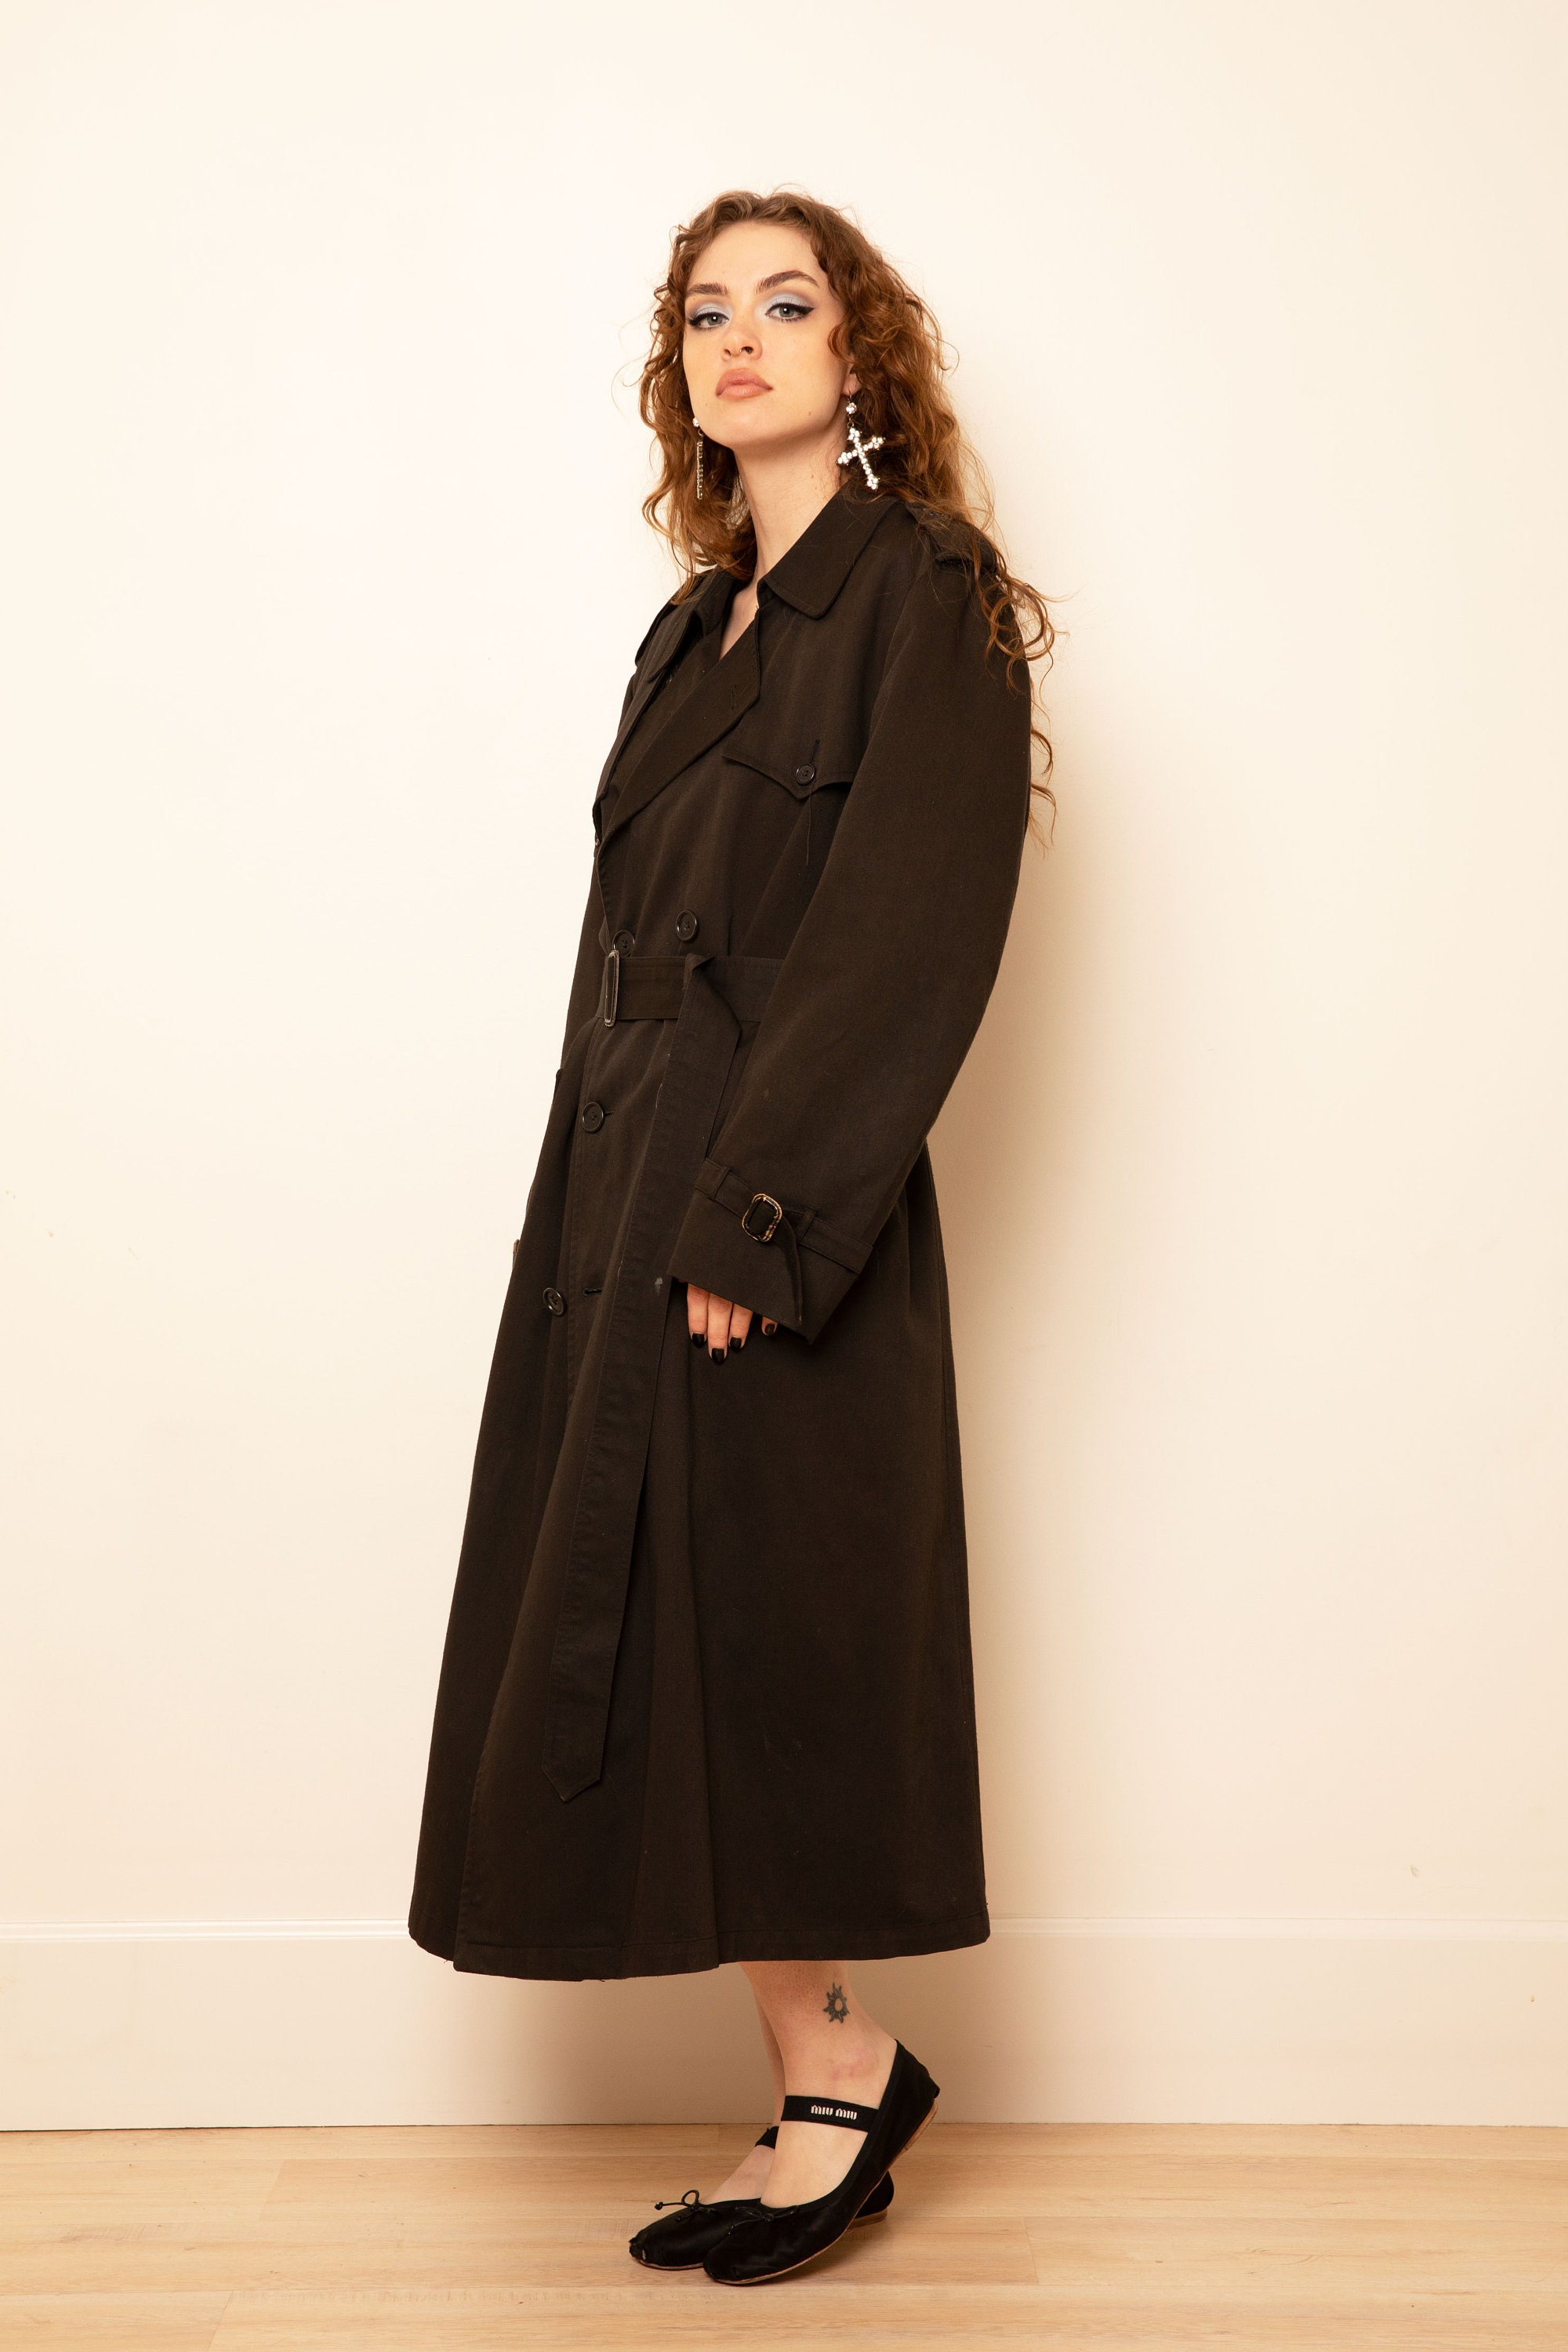 Vintage Christian Dior Trench coat, black 8 regular unisex